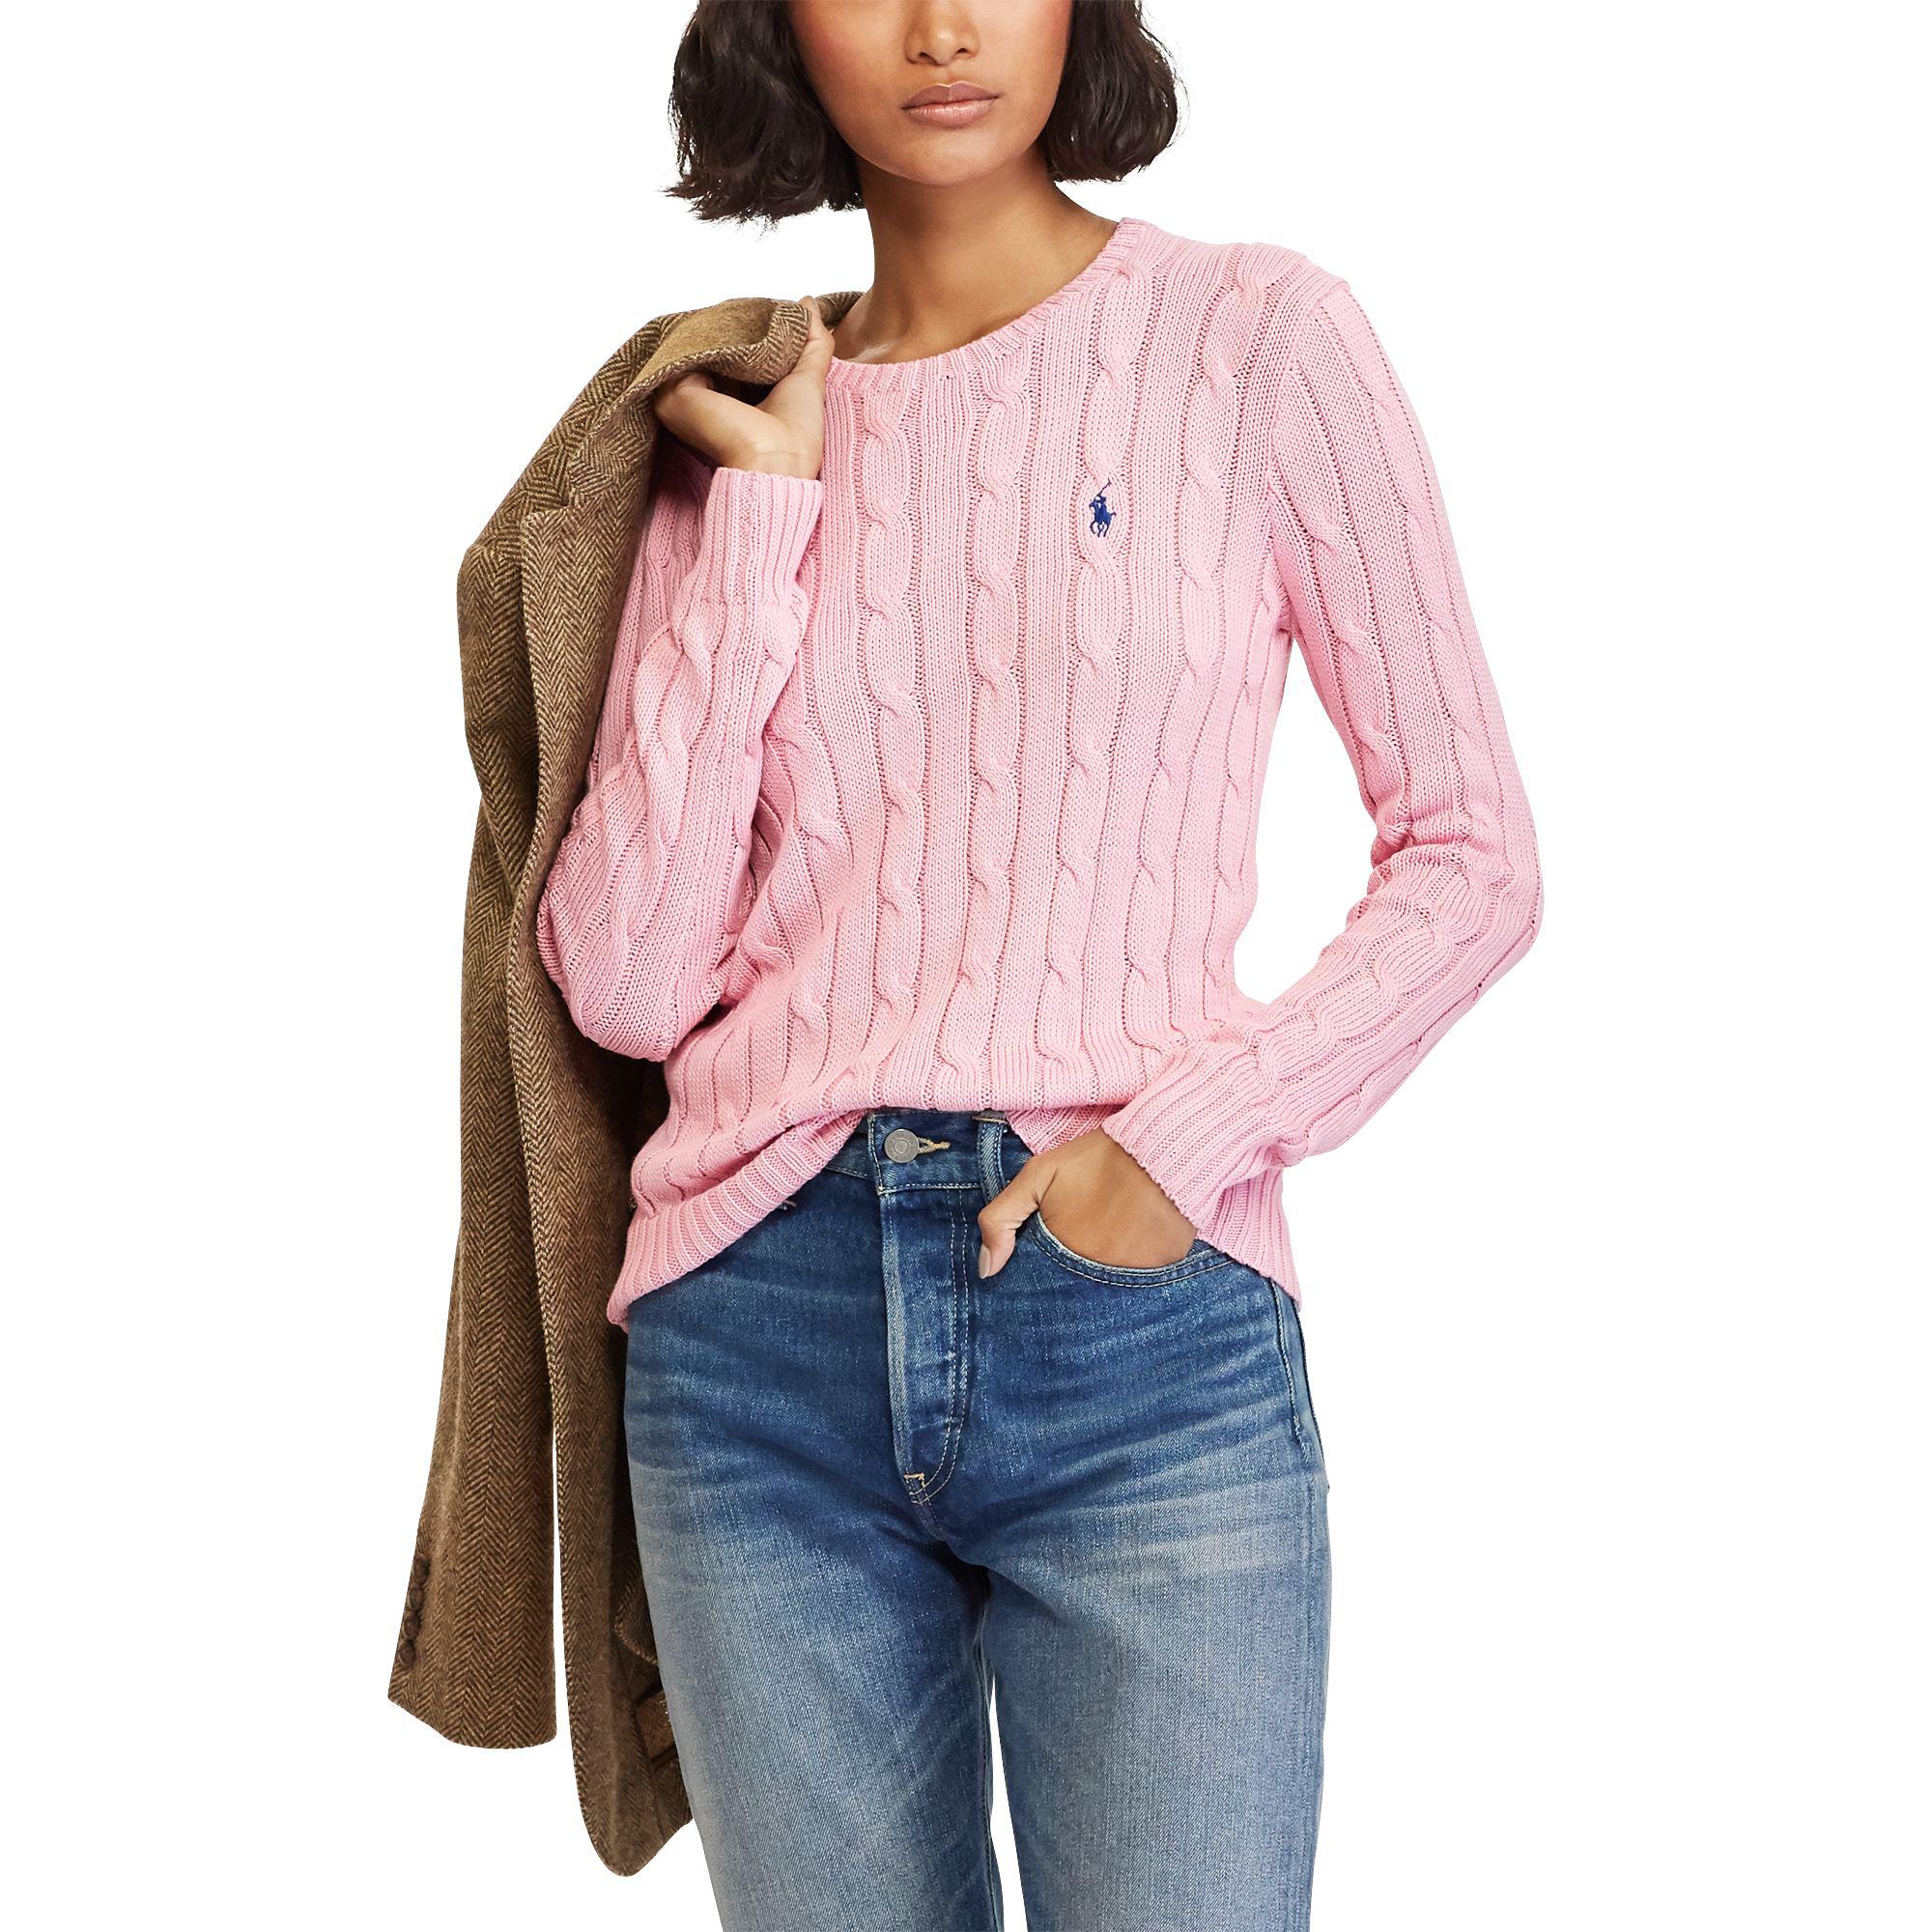 Aprender acerca 80+ imagen polo ralph lauren cotton cable sweater ...